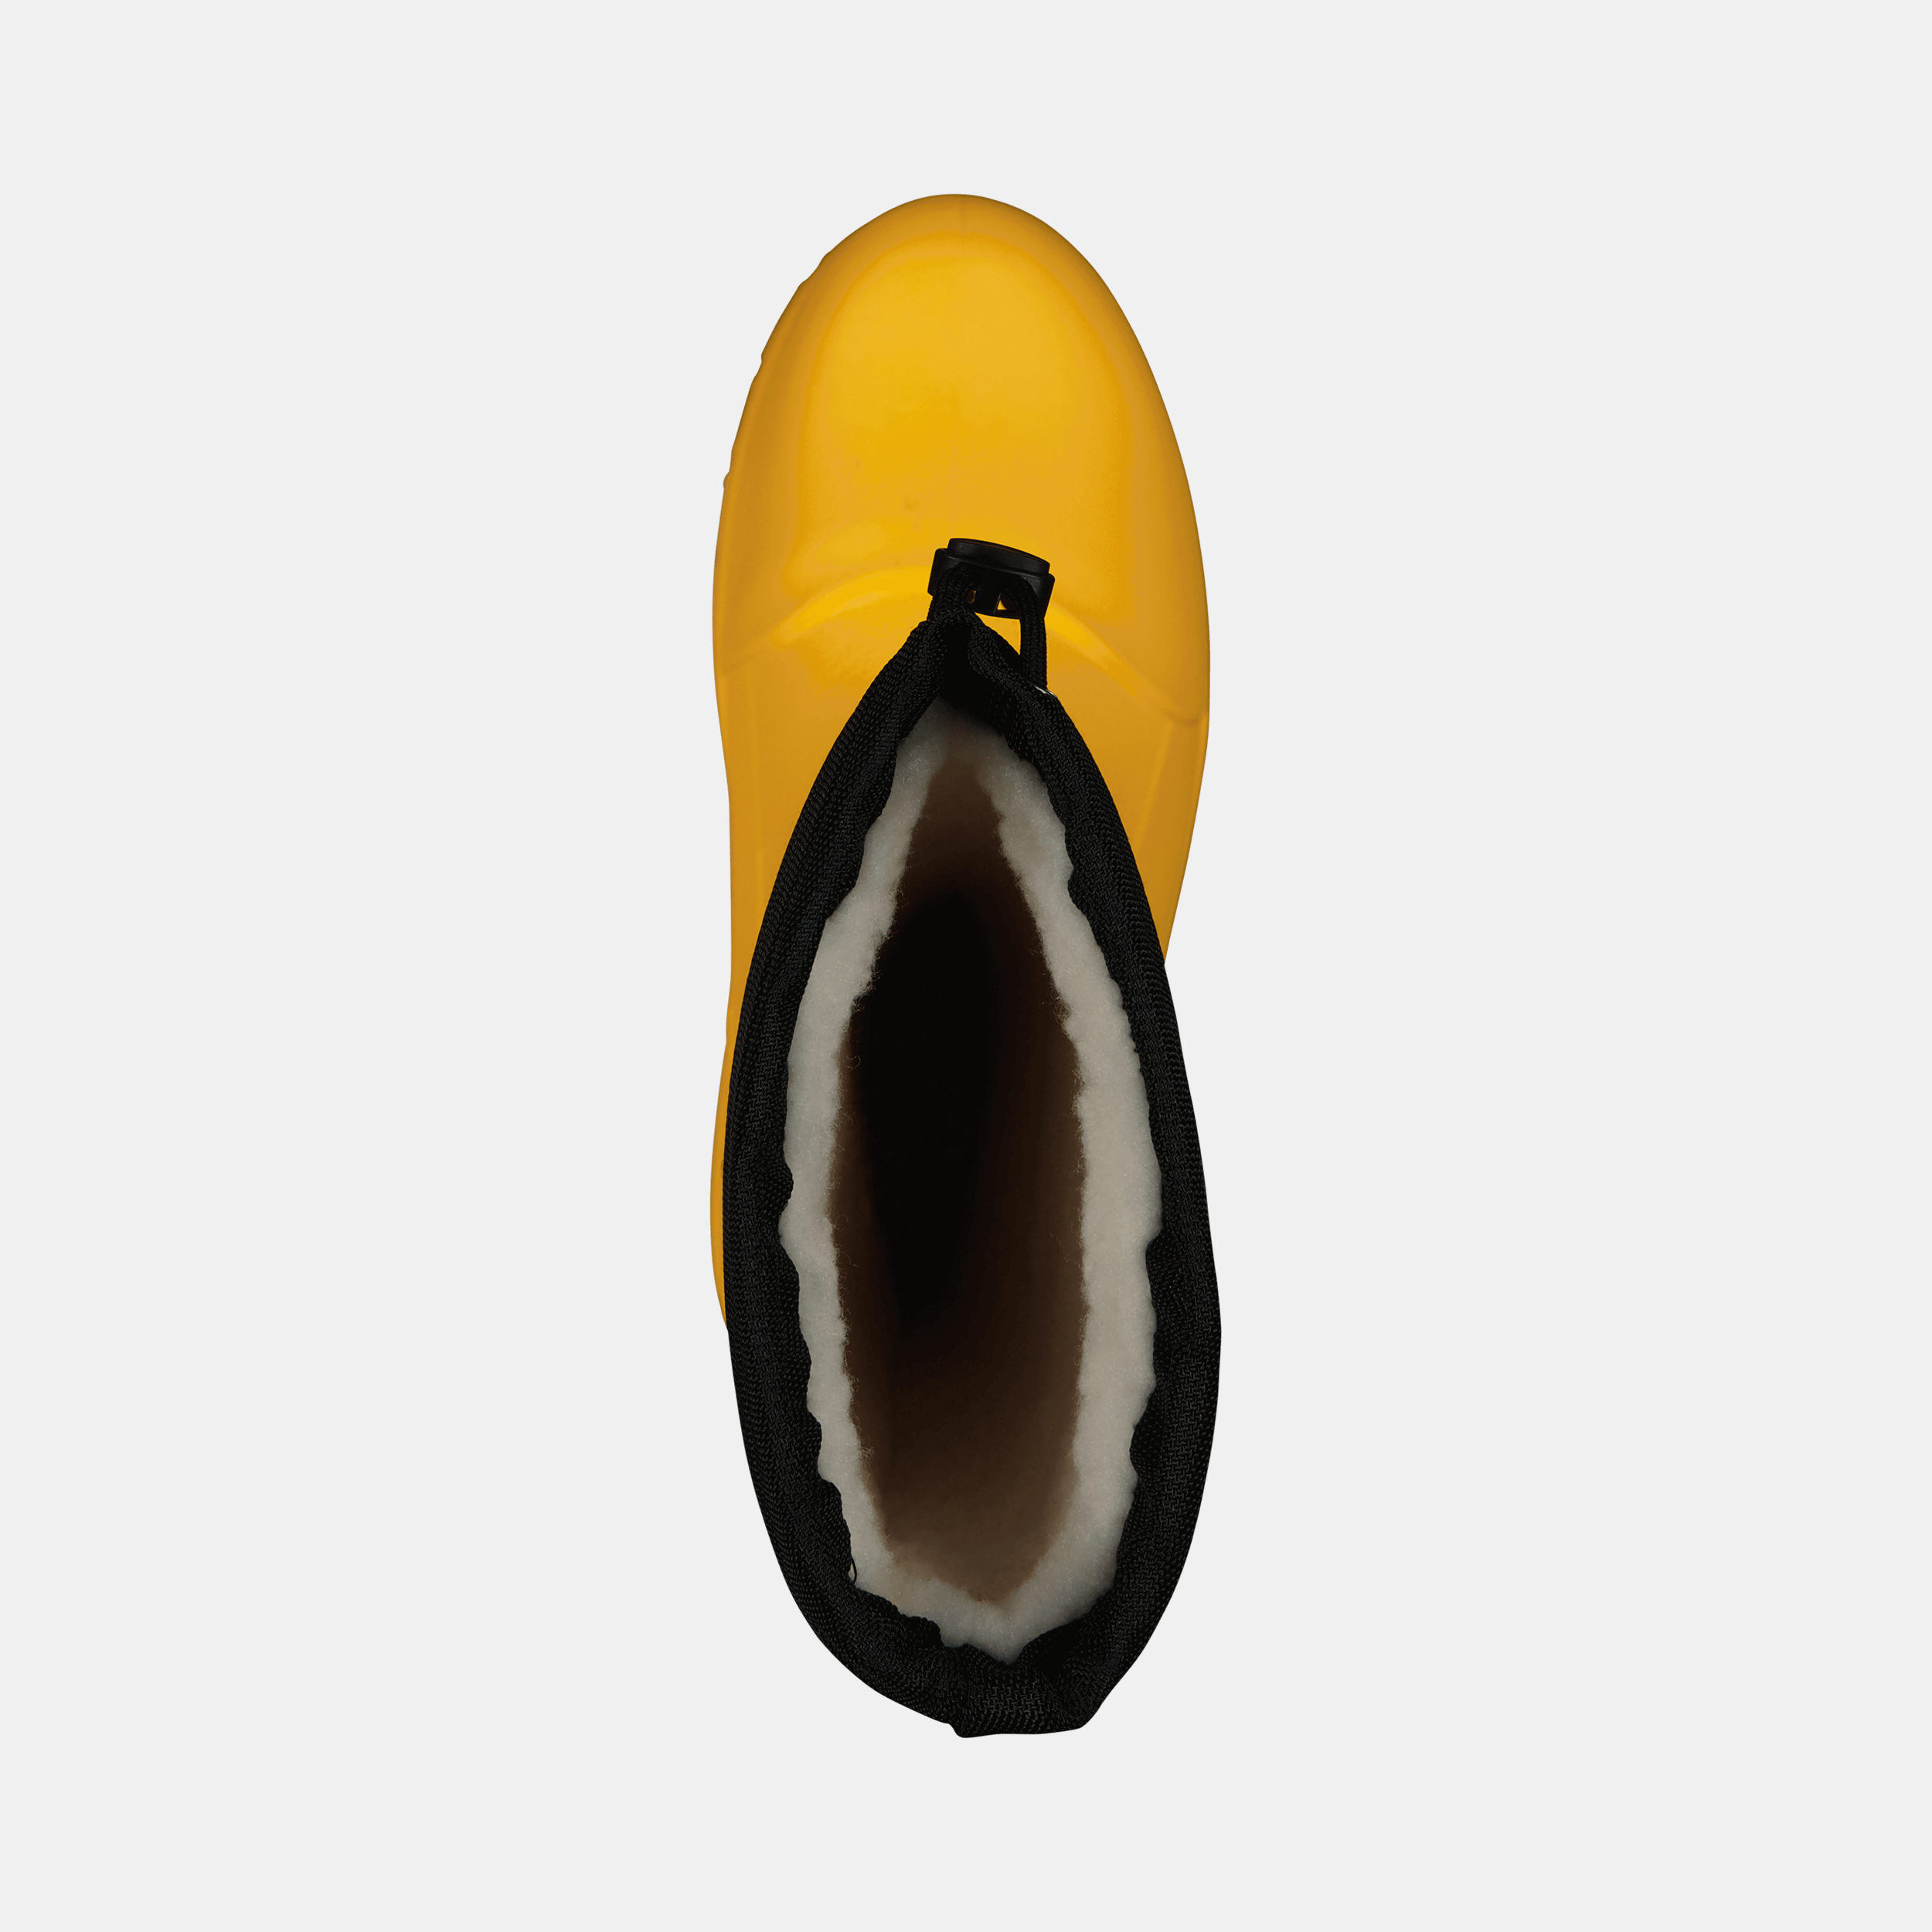 Fubuki Boots, i doposci svedesi leggerissimi e impermeabili